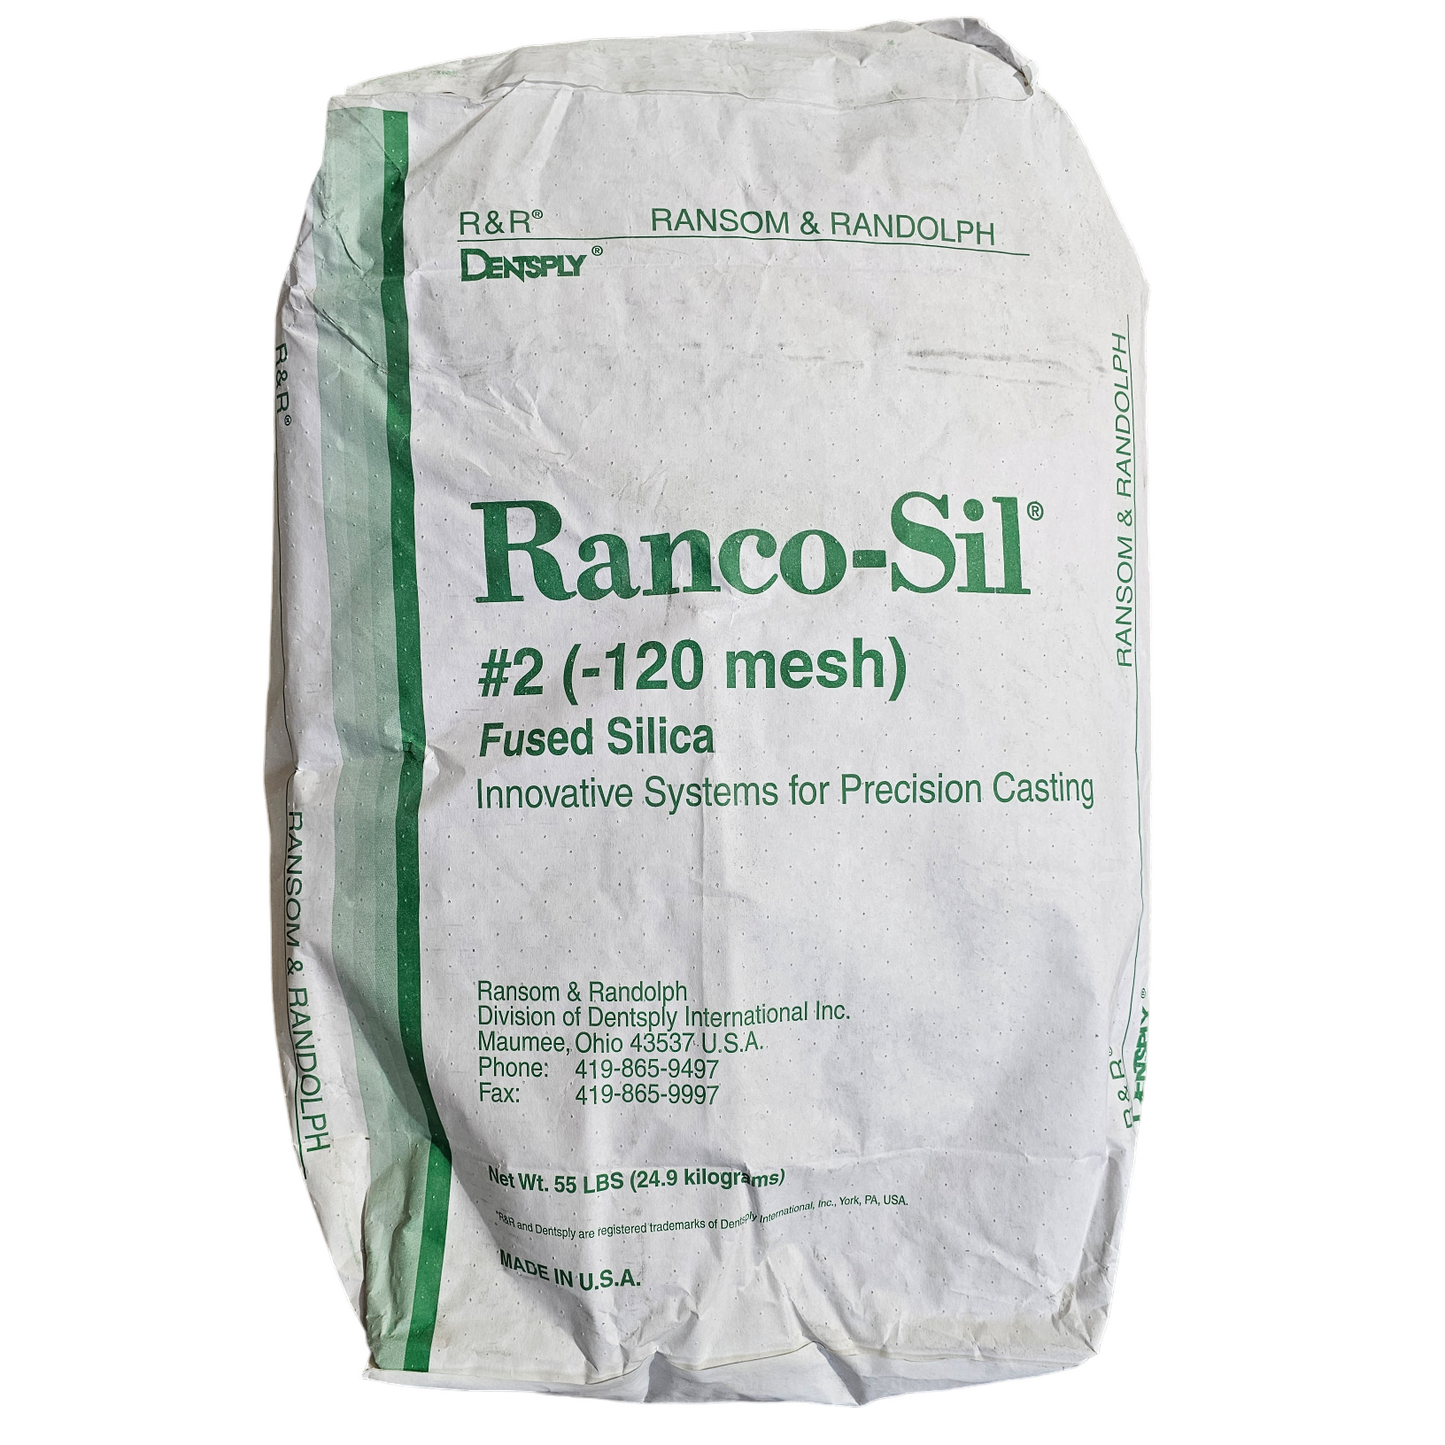 Ranco-Sil™ fused silica